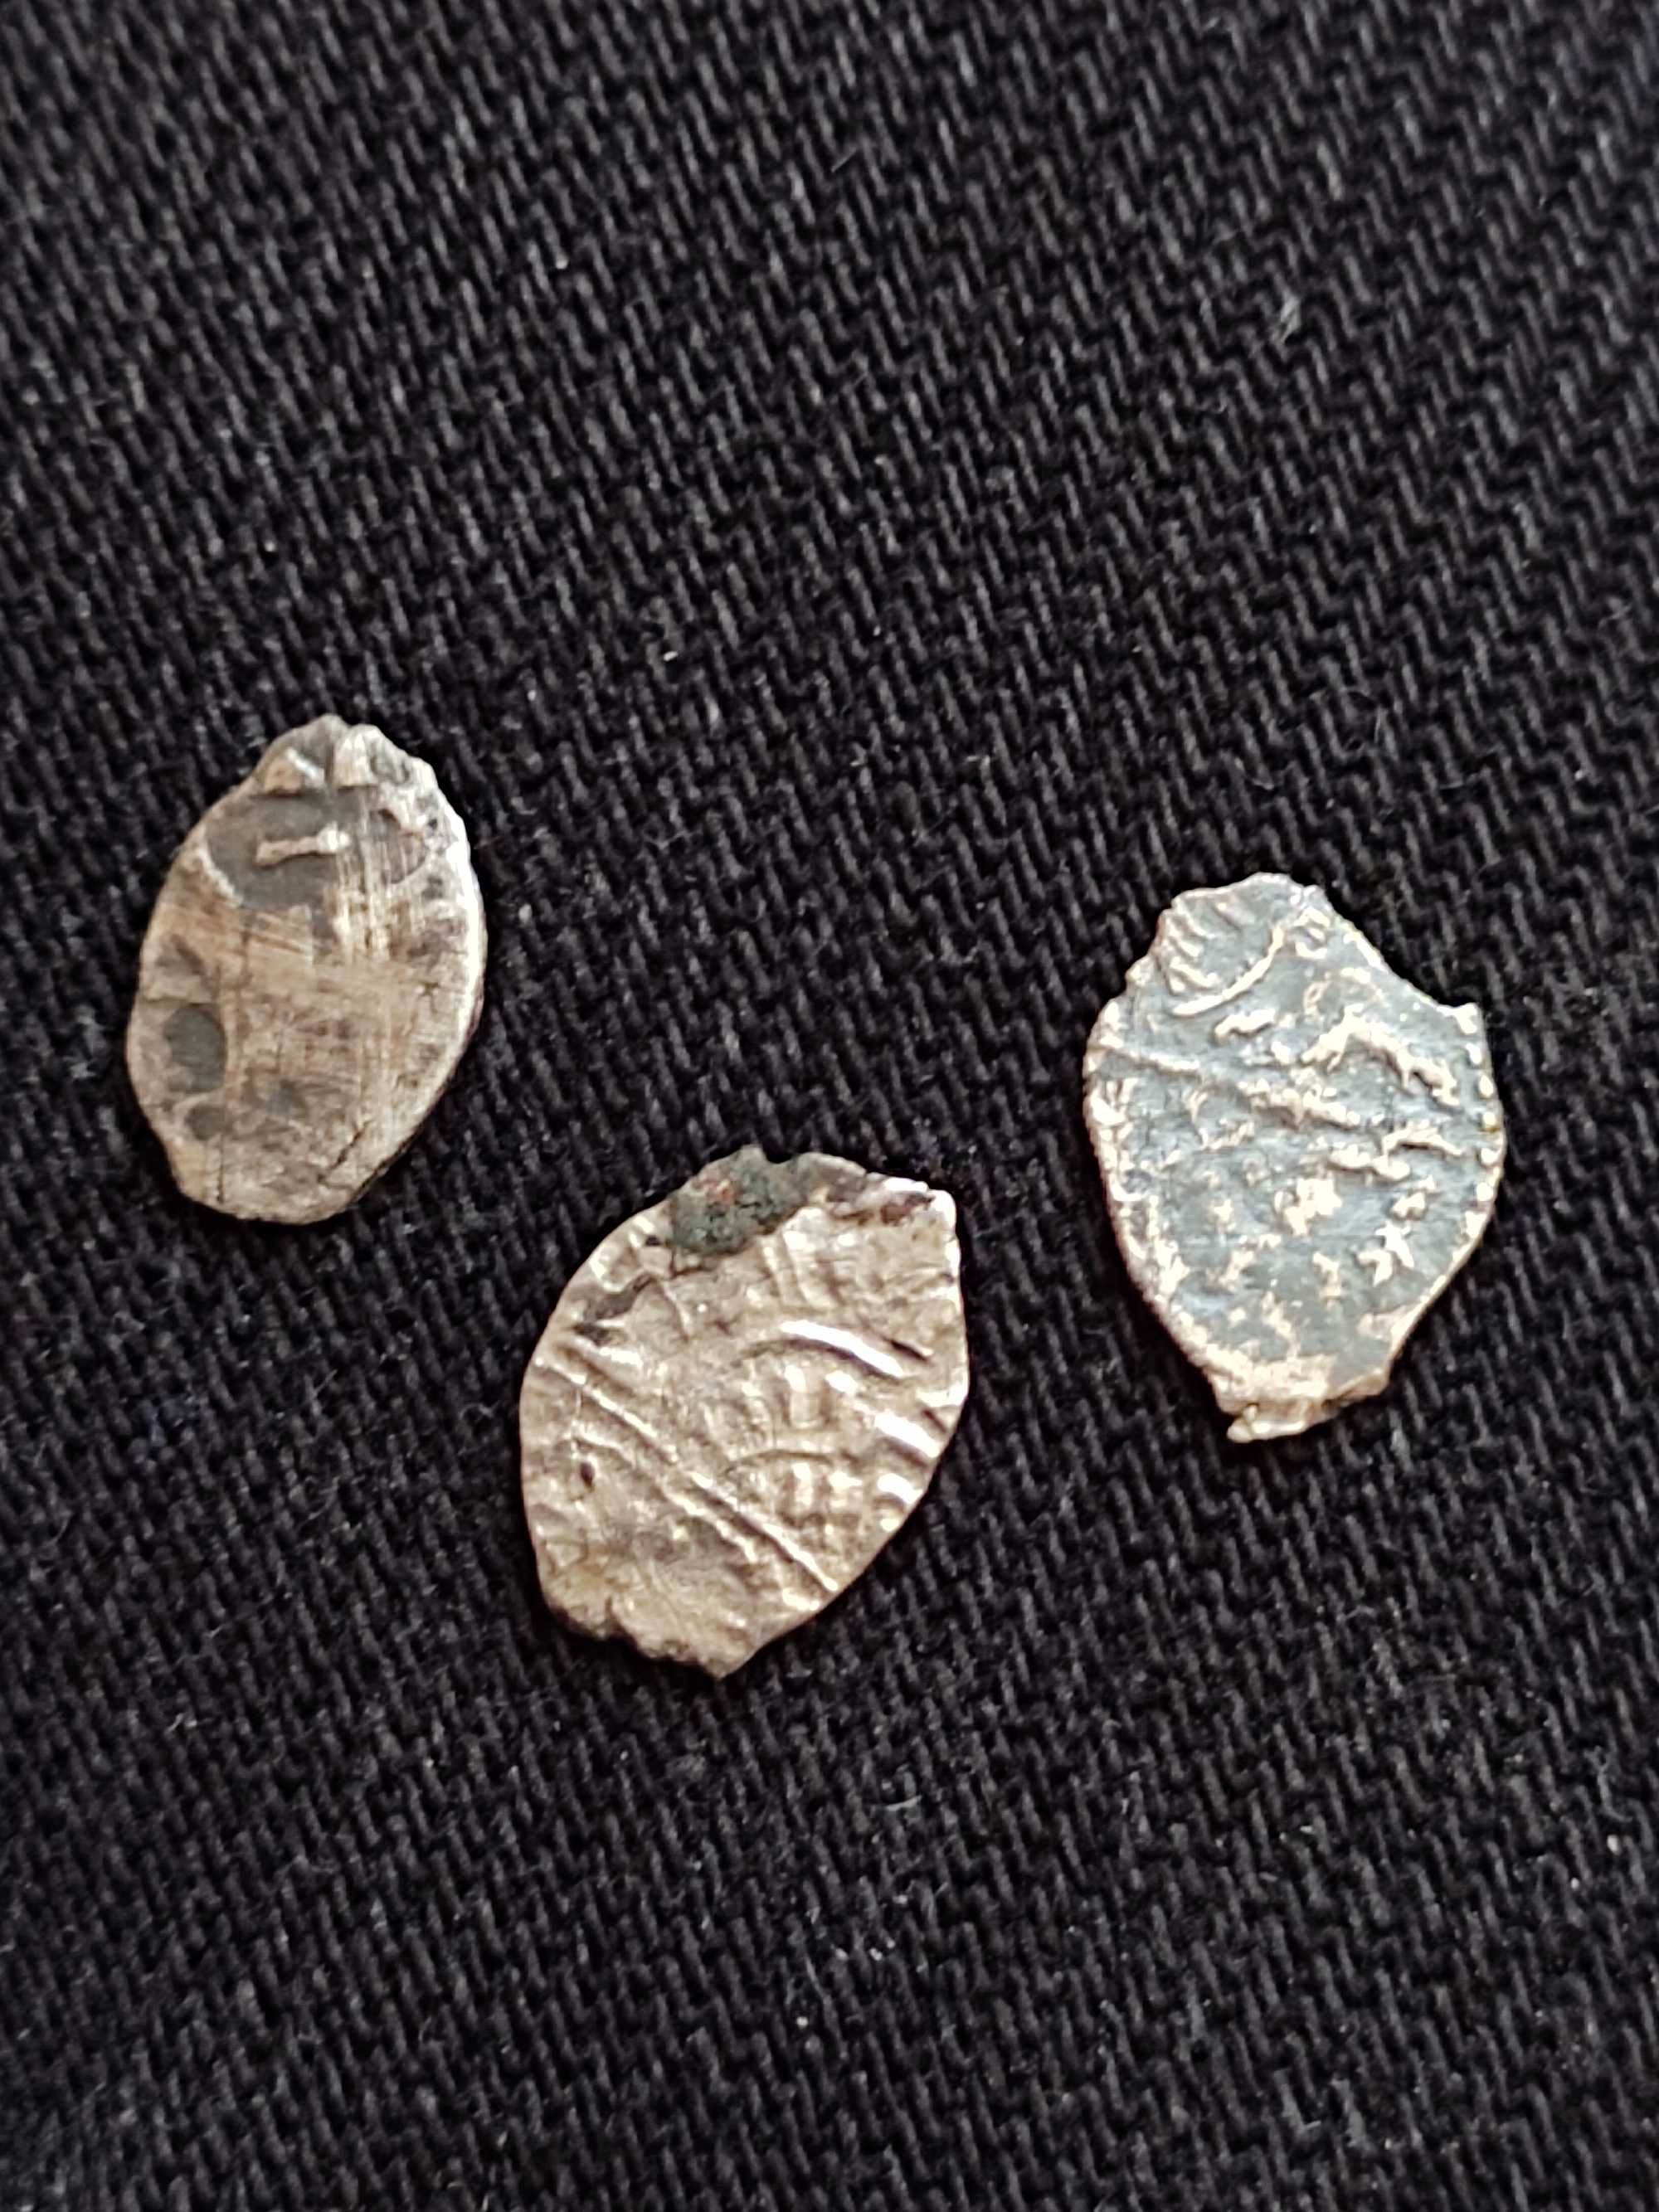 Три серебряные копейки - "чешуйки" правления Петра 1.